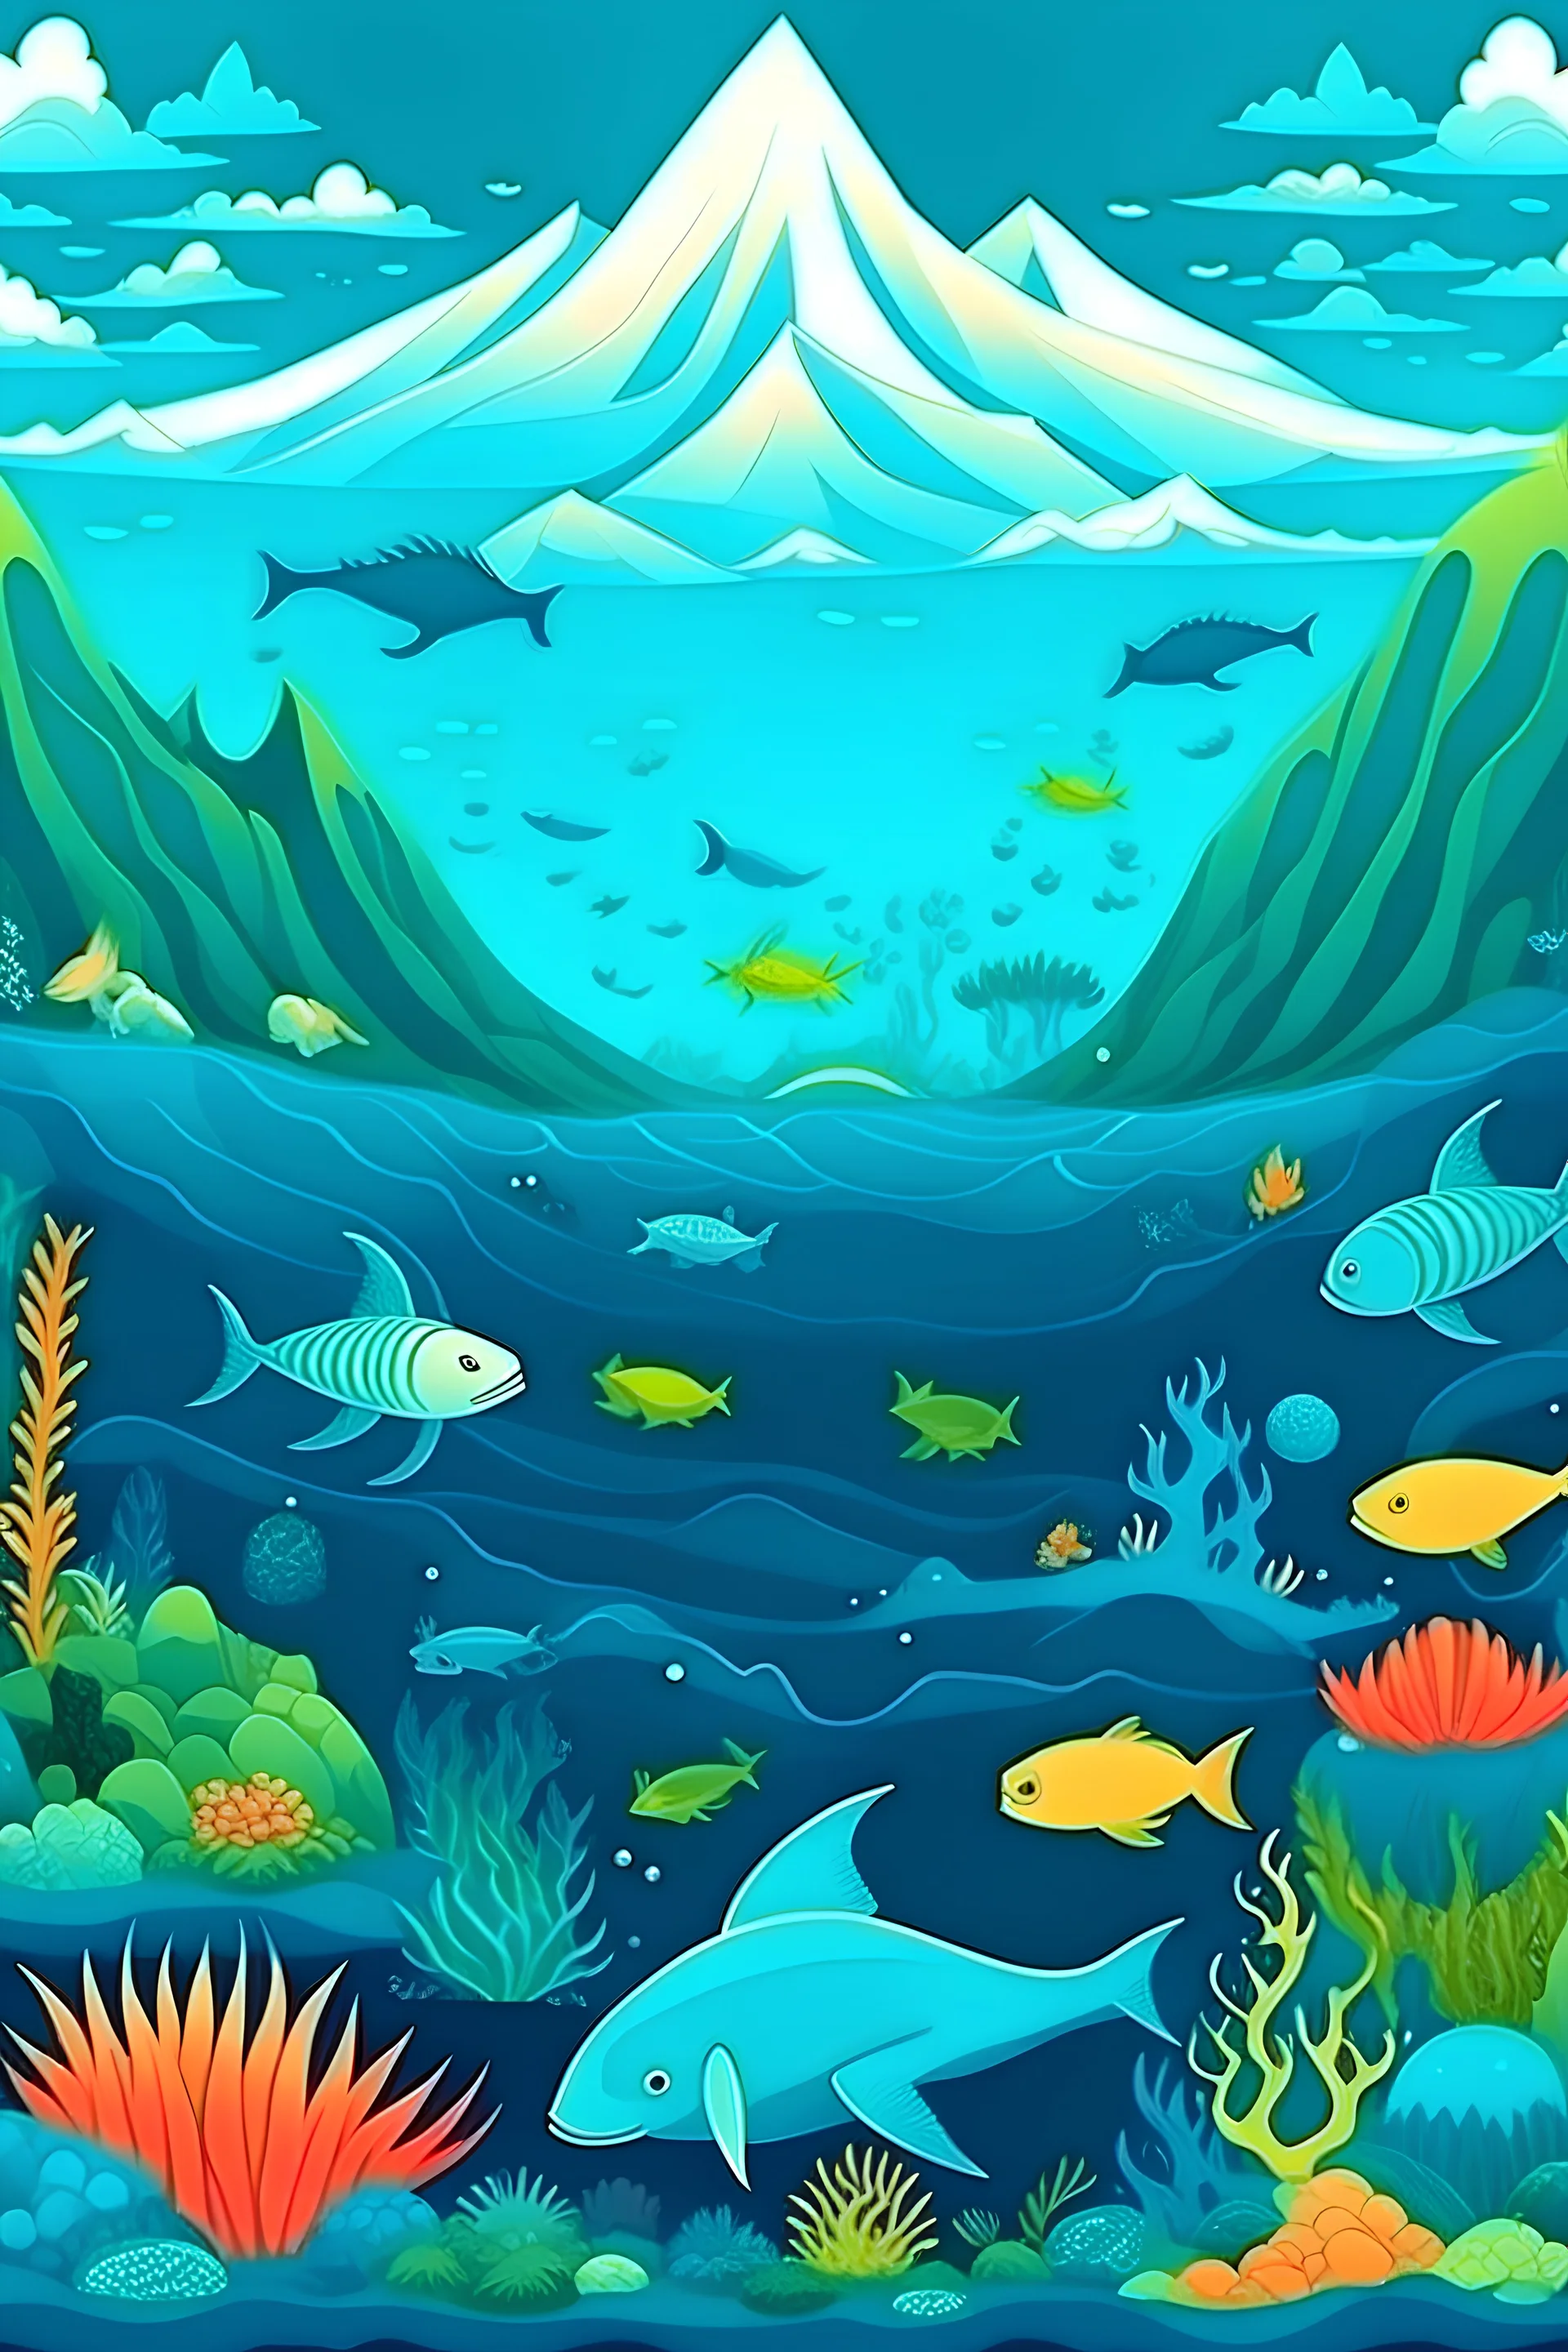 Vista del fondo del mar, con volcanes e erupcion, peces de diferentes colores, tiburones, corales, estrellas y caballitos de mar, el agua en diferentes tonos de azules y verdes